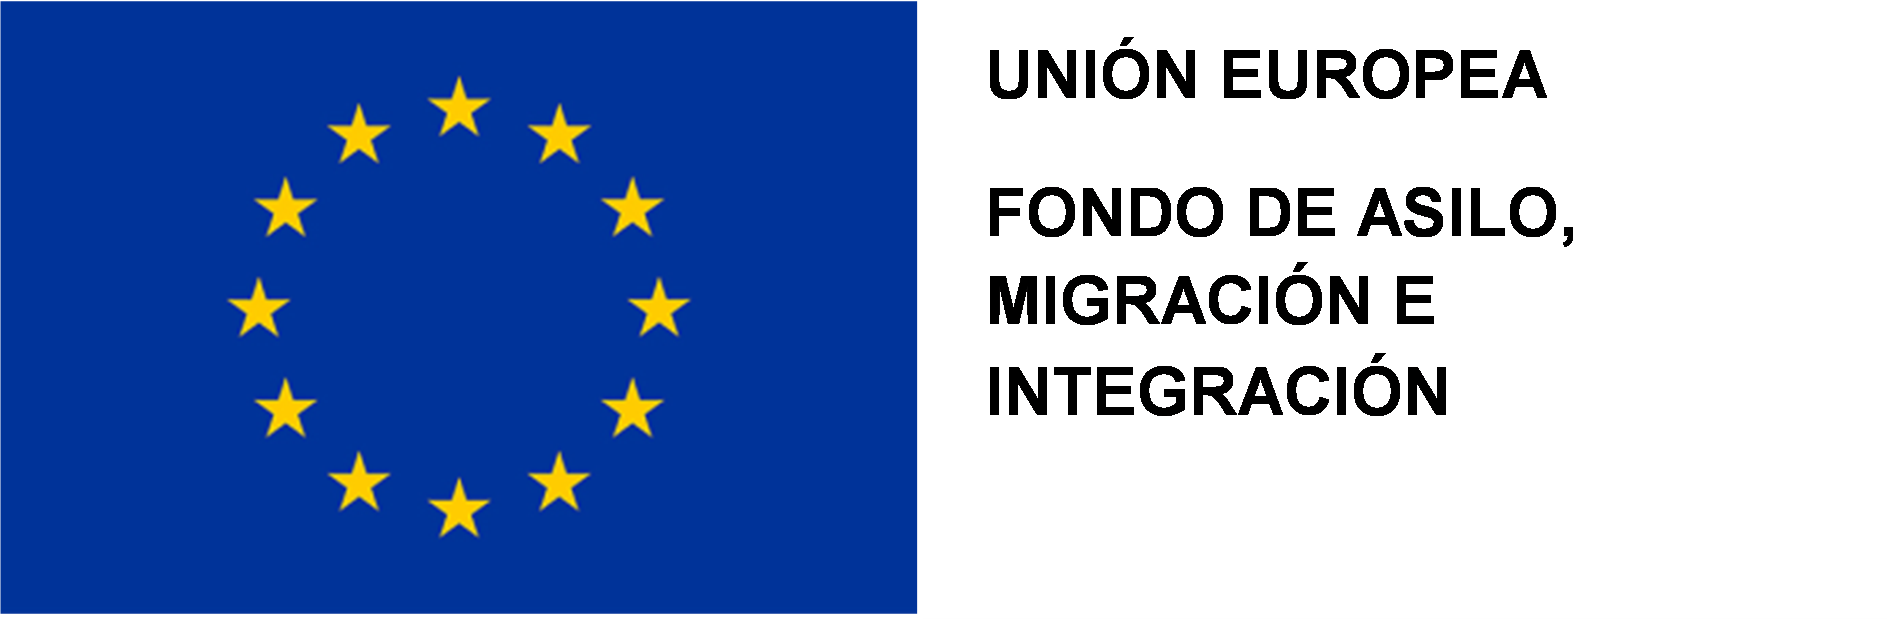 Fondo de Asilo, Migración e Integración